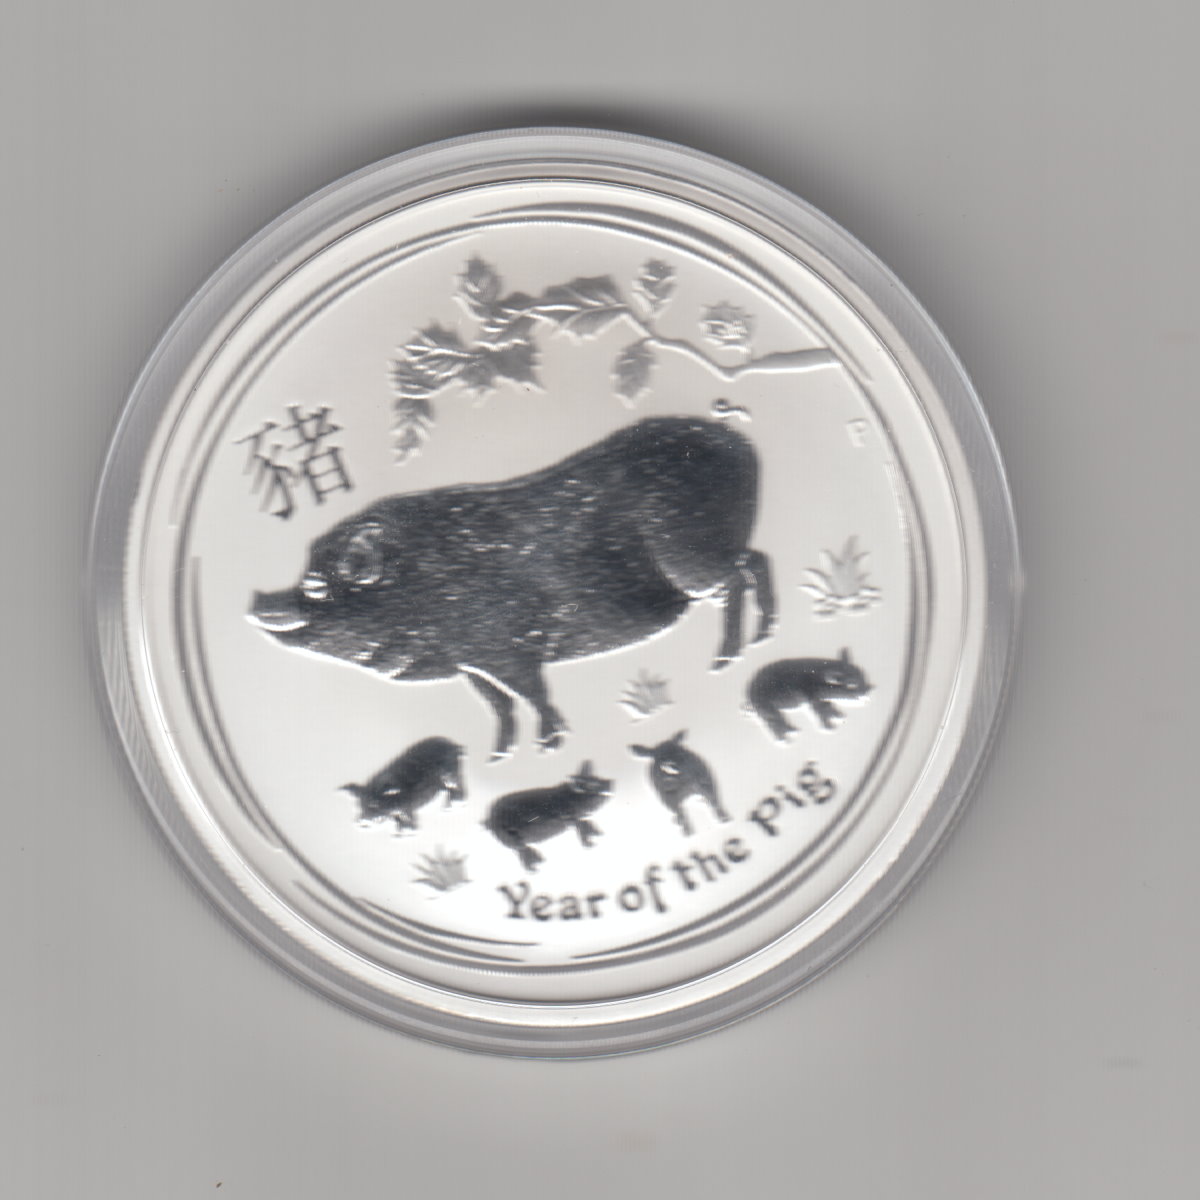  Australien, 2 Dollar 2019, Lunar II Schwein, 2 unzen oz Silber   